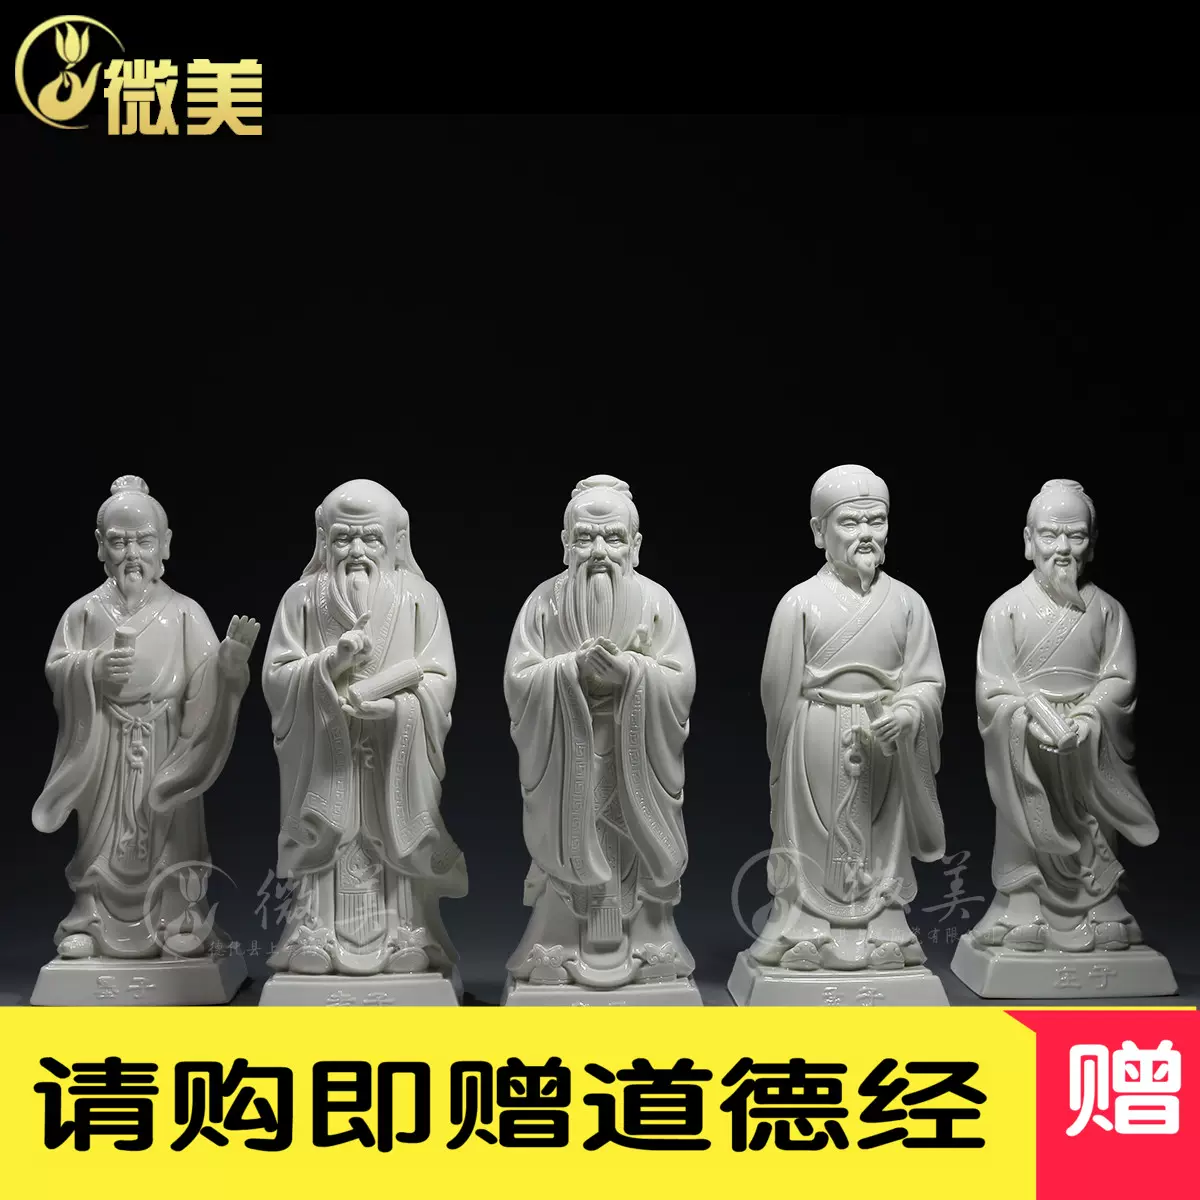 12吋诸子百家孔子老子庄子孟子墨子雕像陶瓷工艺品摆件国学纪念品-Taobao